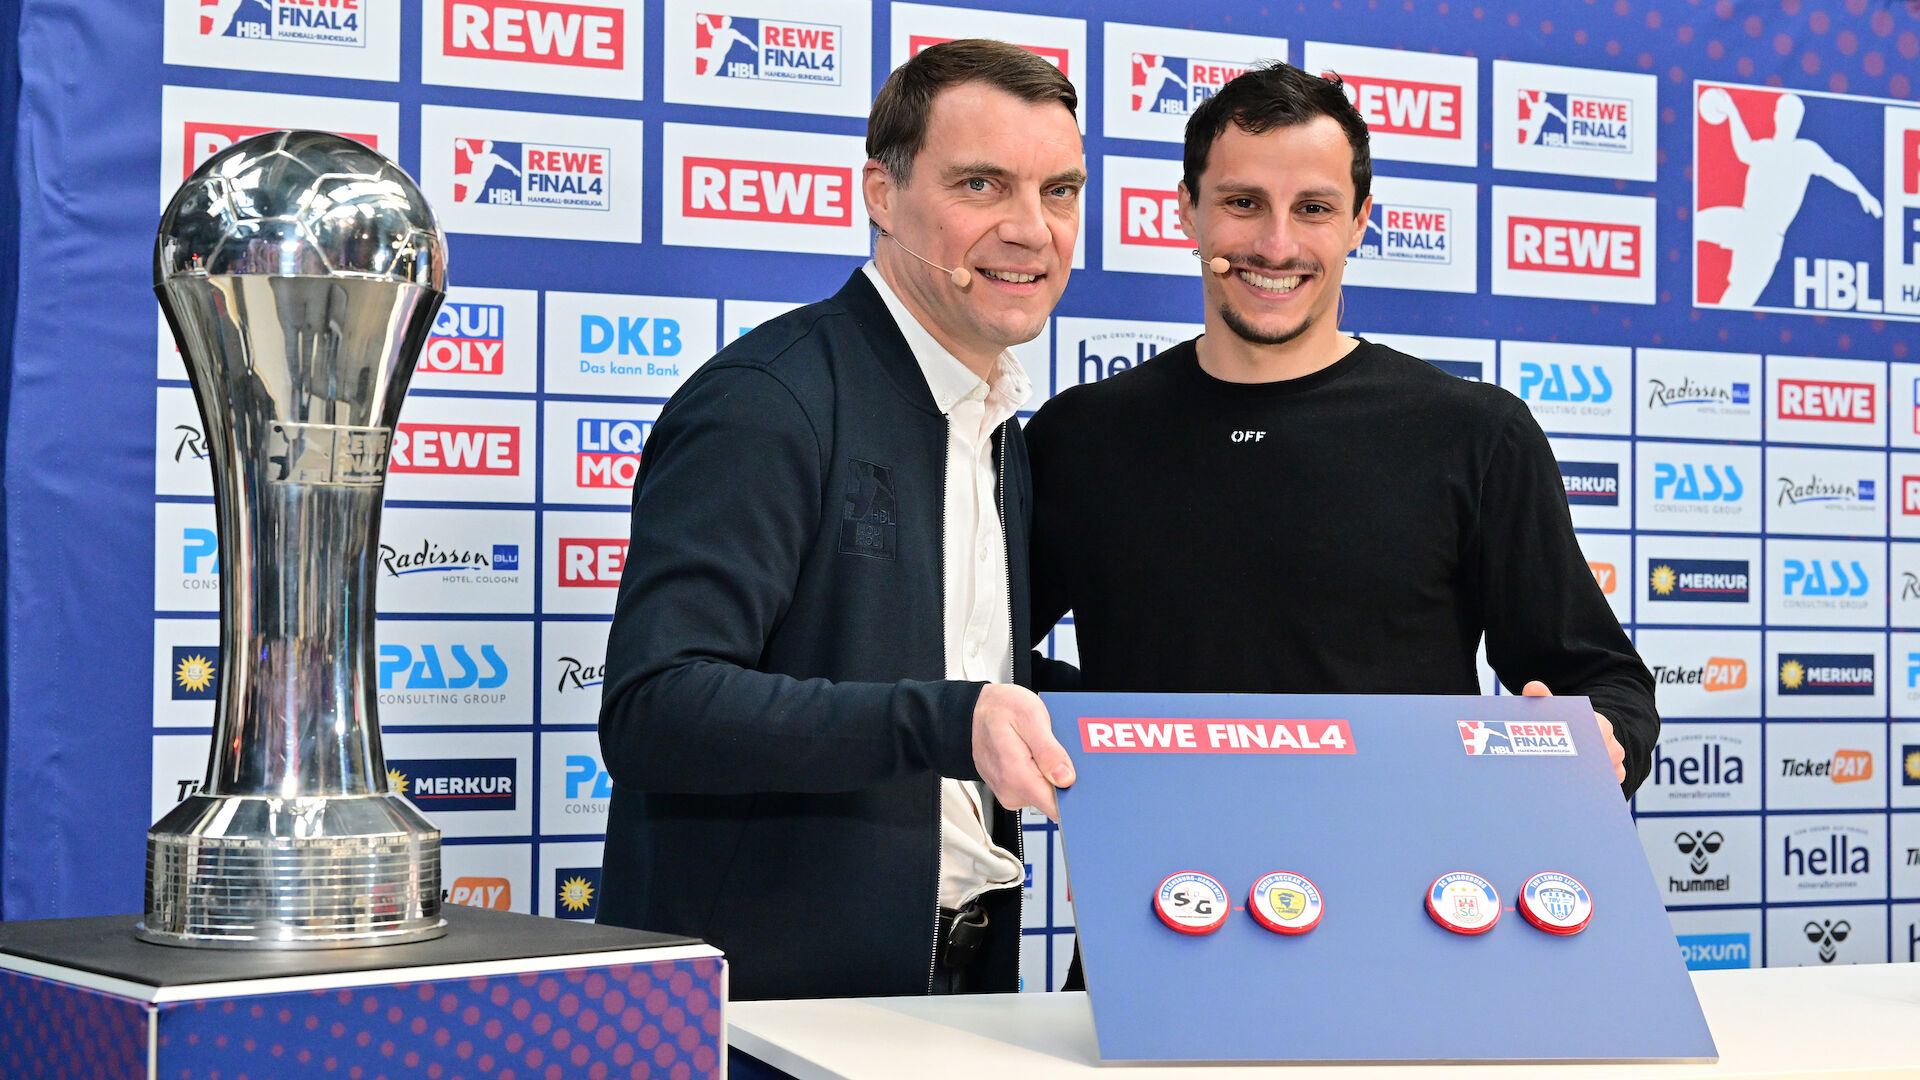 DHB-Pokal Halbfinalpartien des REWE Final4 2023 in Köln ausgelost News LIQUI MOLY HBL